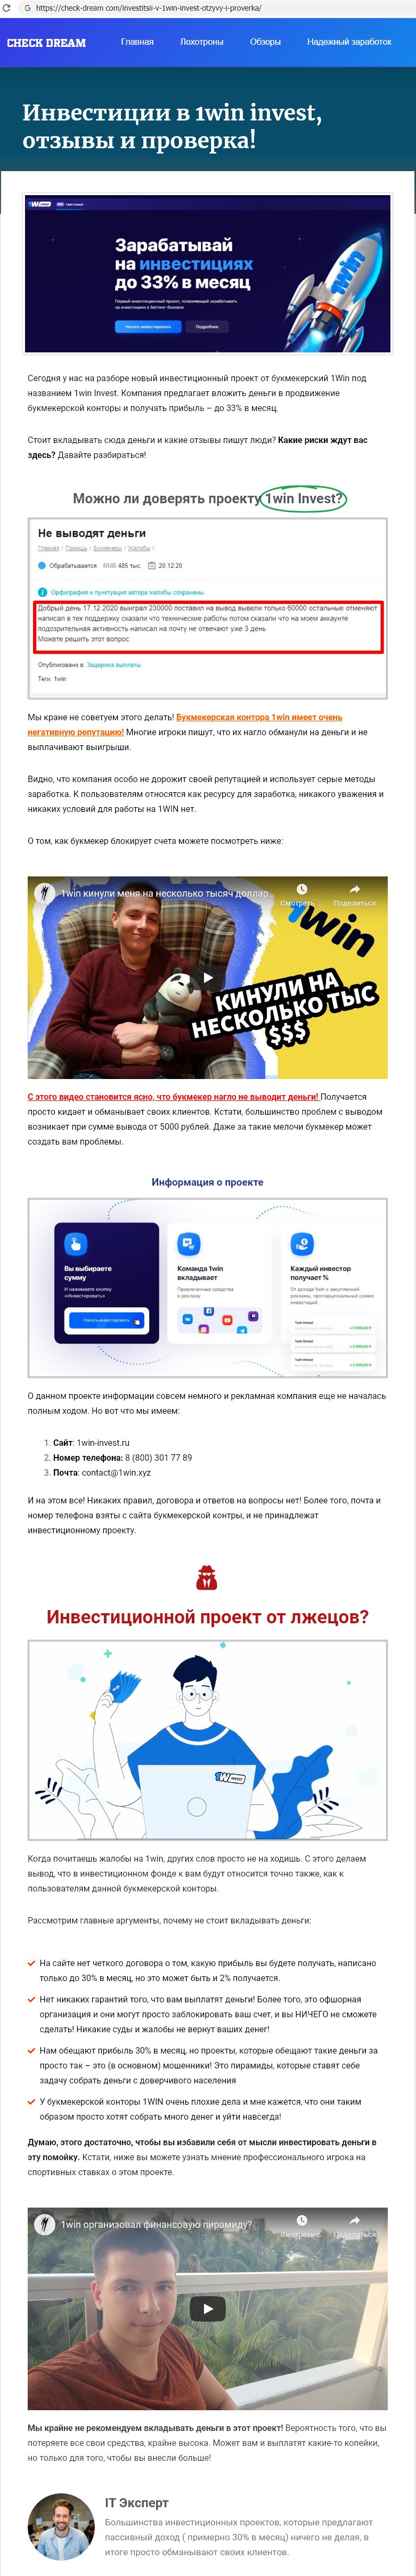 1win invest Россия - Отзывы сотрудников компании - О Работе